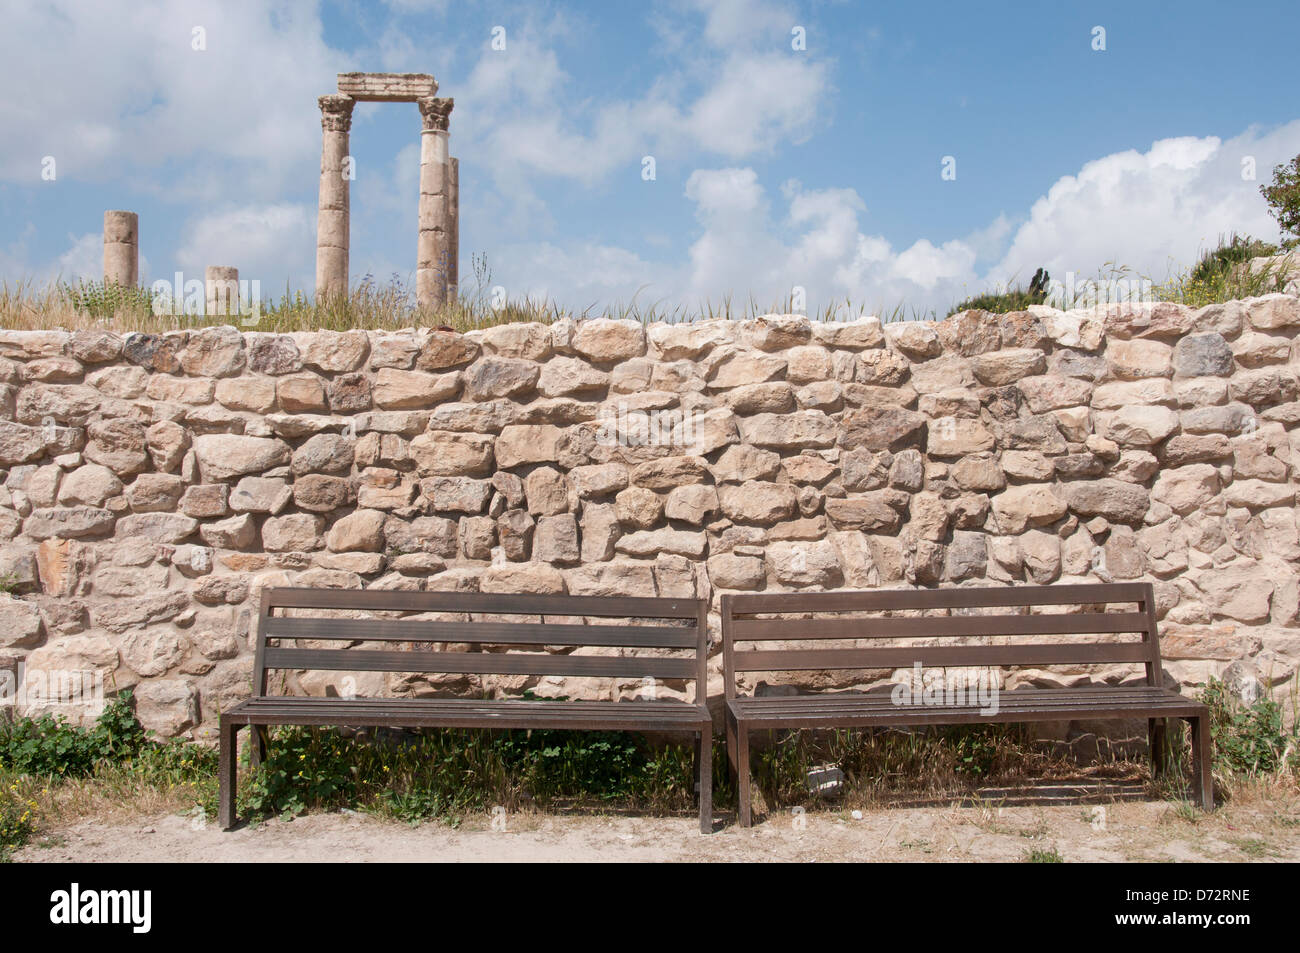 La Jordanie, Amman. La citadelle romaine avec une paire de sièges en bois au premier plan. Vue touristique. Banque D'Images